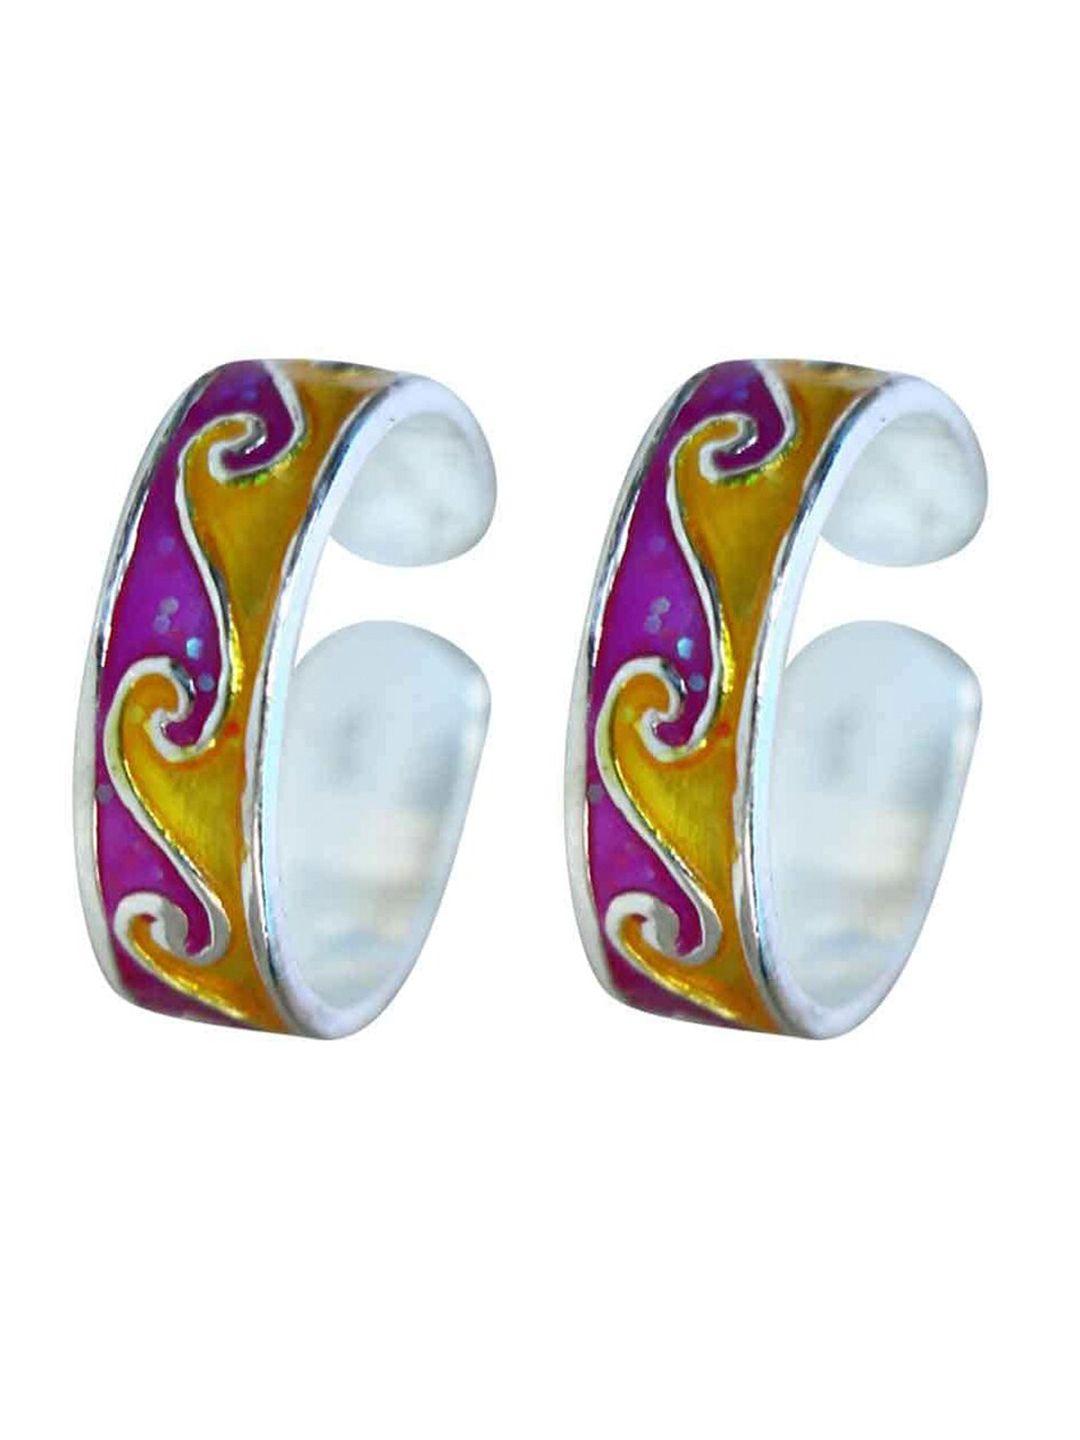 abhooshan-set-of-2-92.5-sterling-silver-adjustable-toe-rings